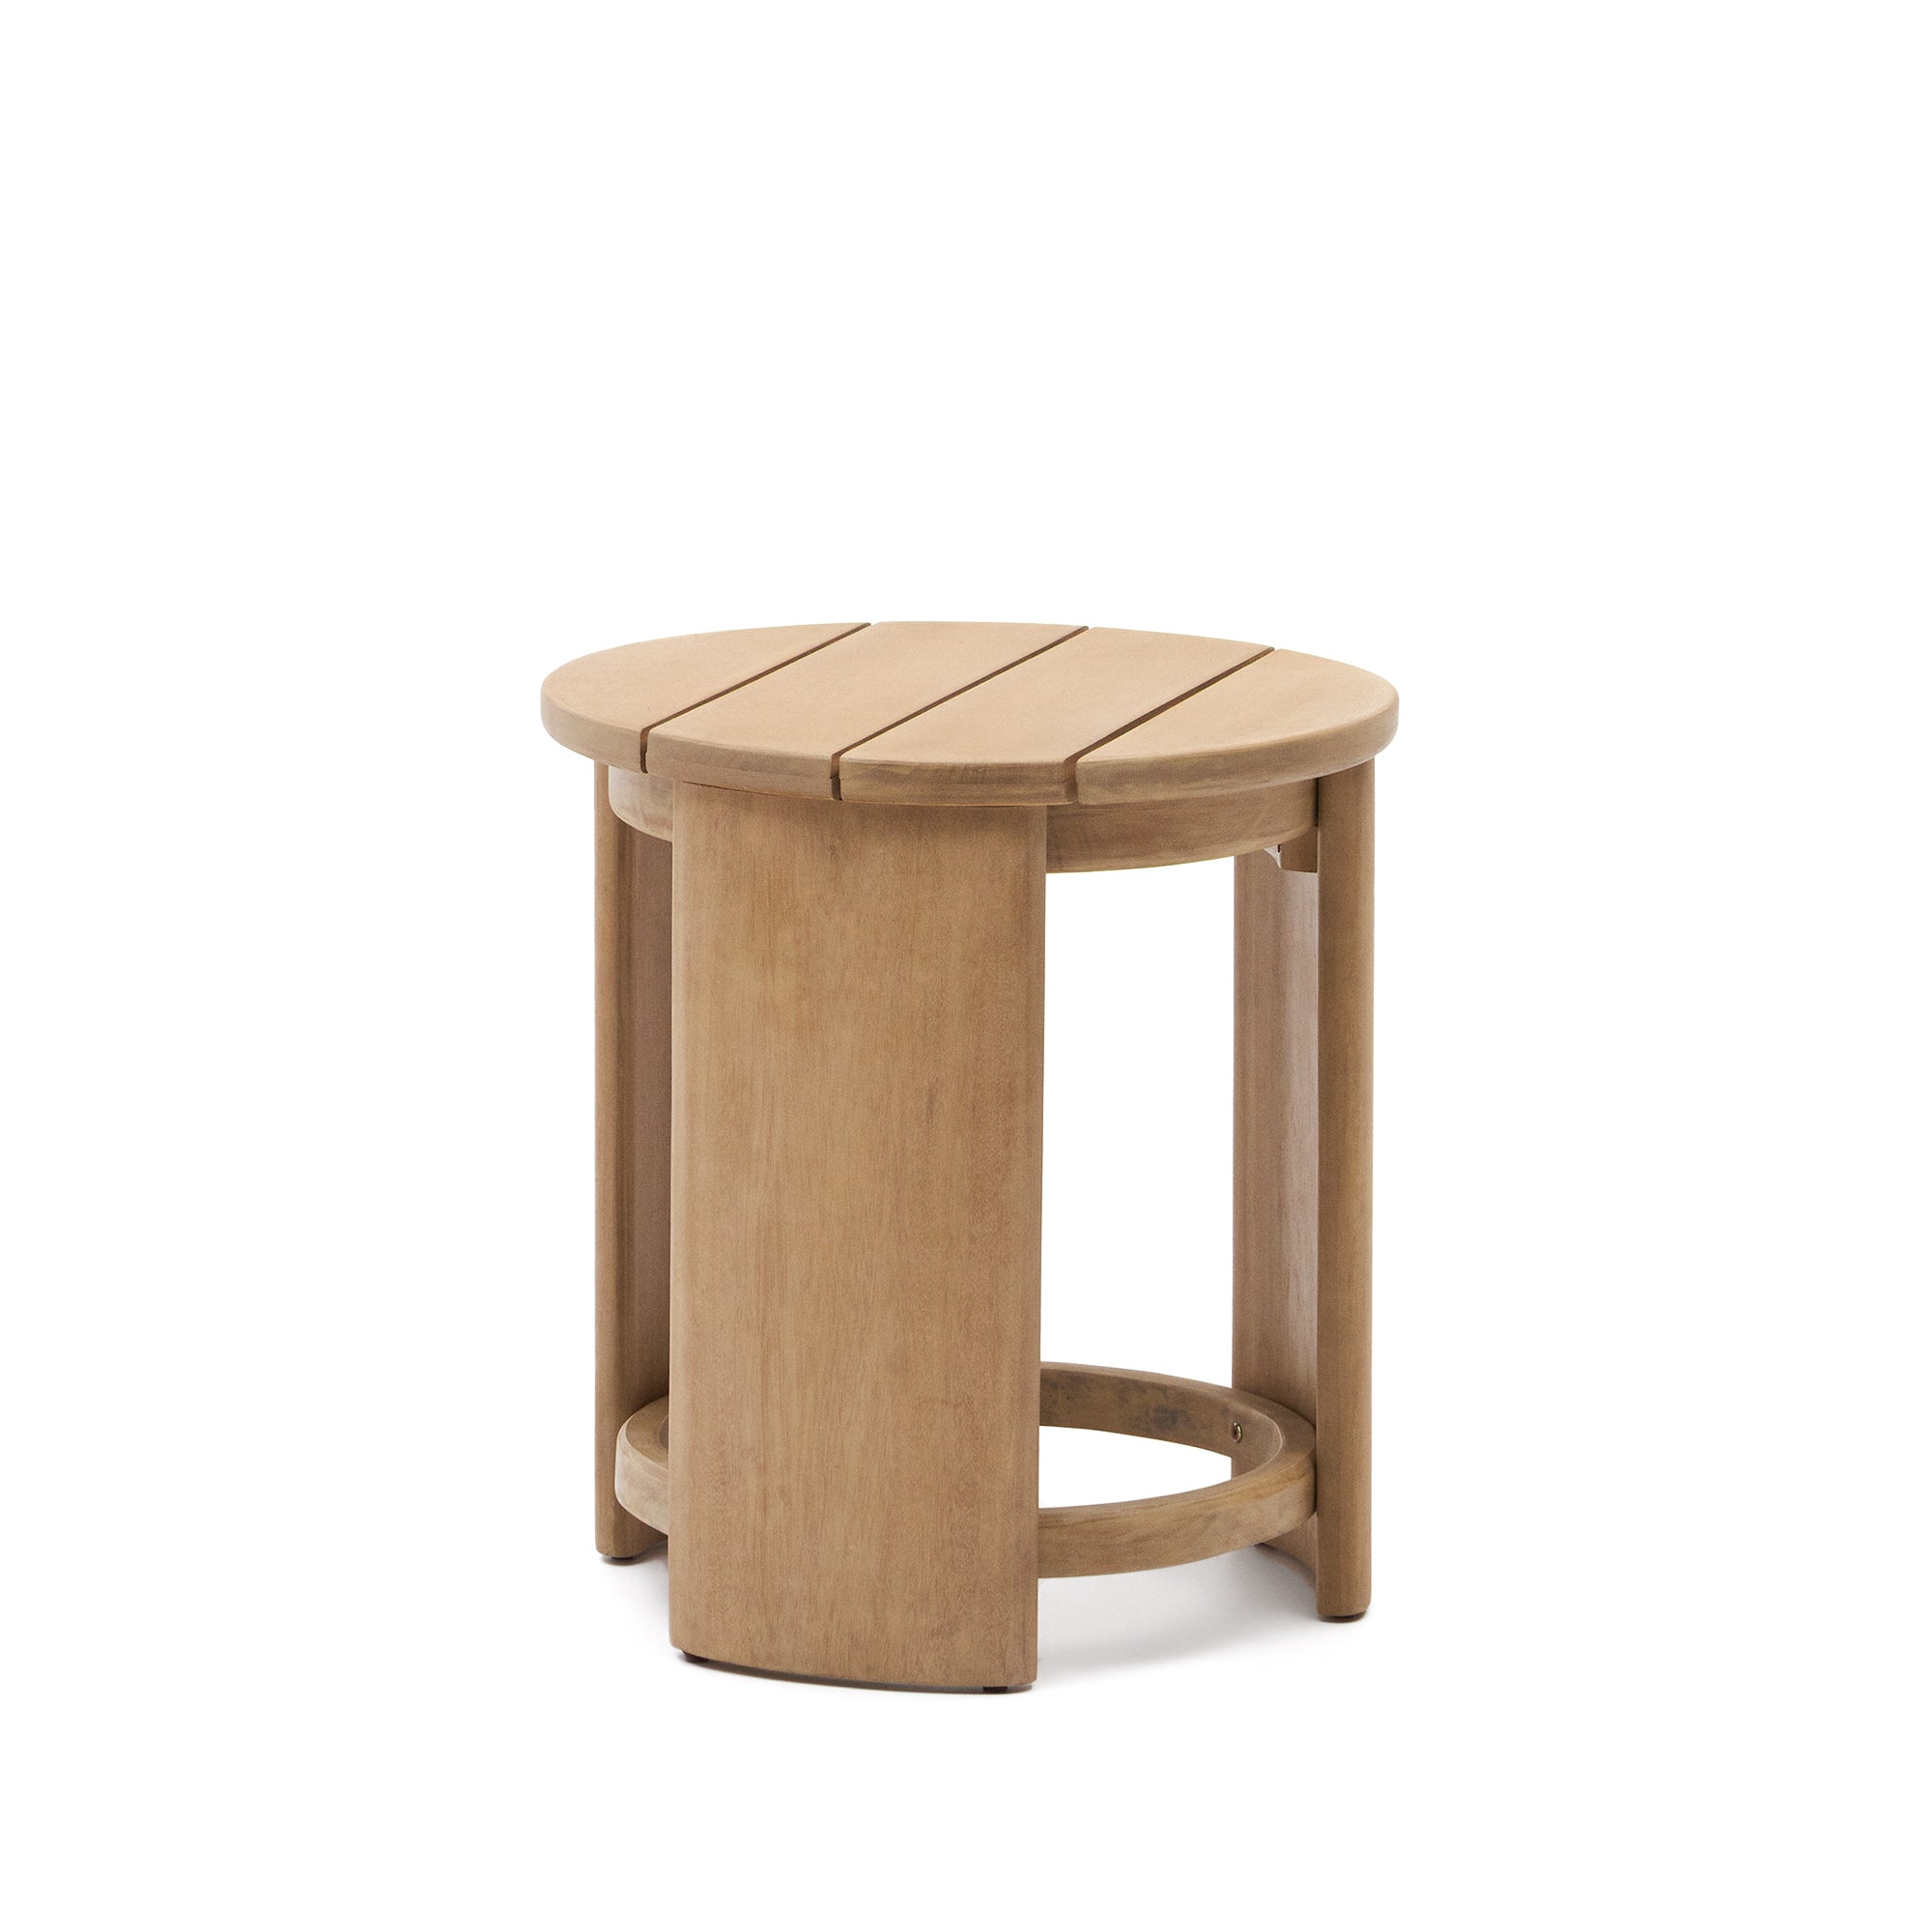 Xoriguer oldalsó asztal, készült szilárd eukaliptusz fából Ø63,5 cm 100% FSC